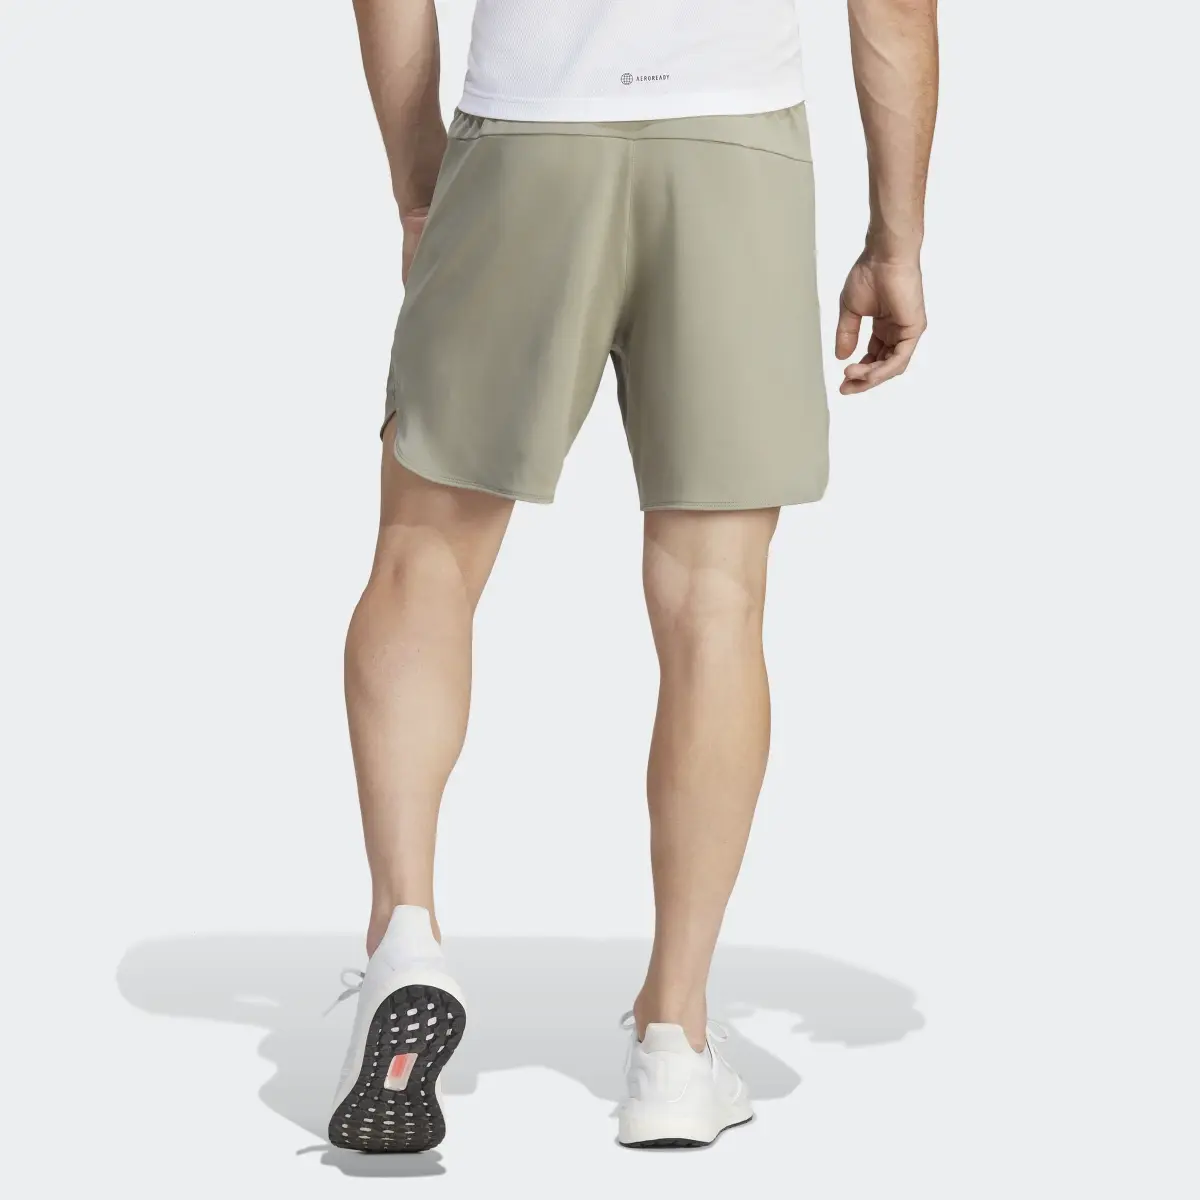 Adidas Shorts Designed for Training. 2